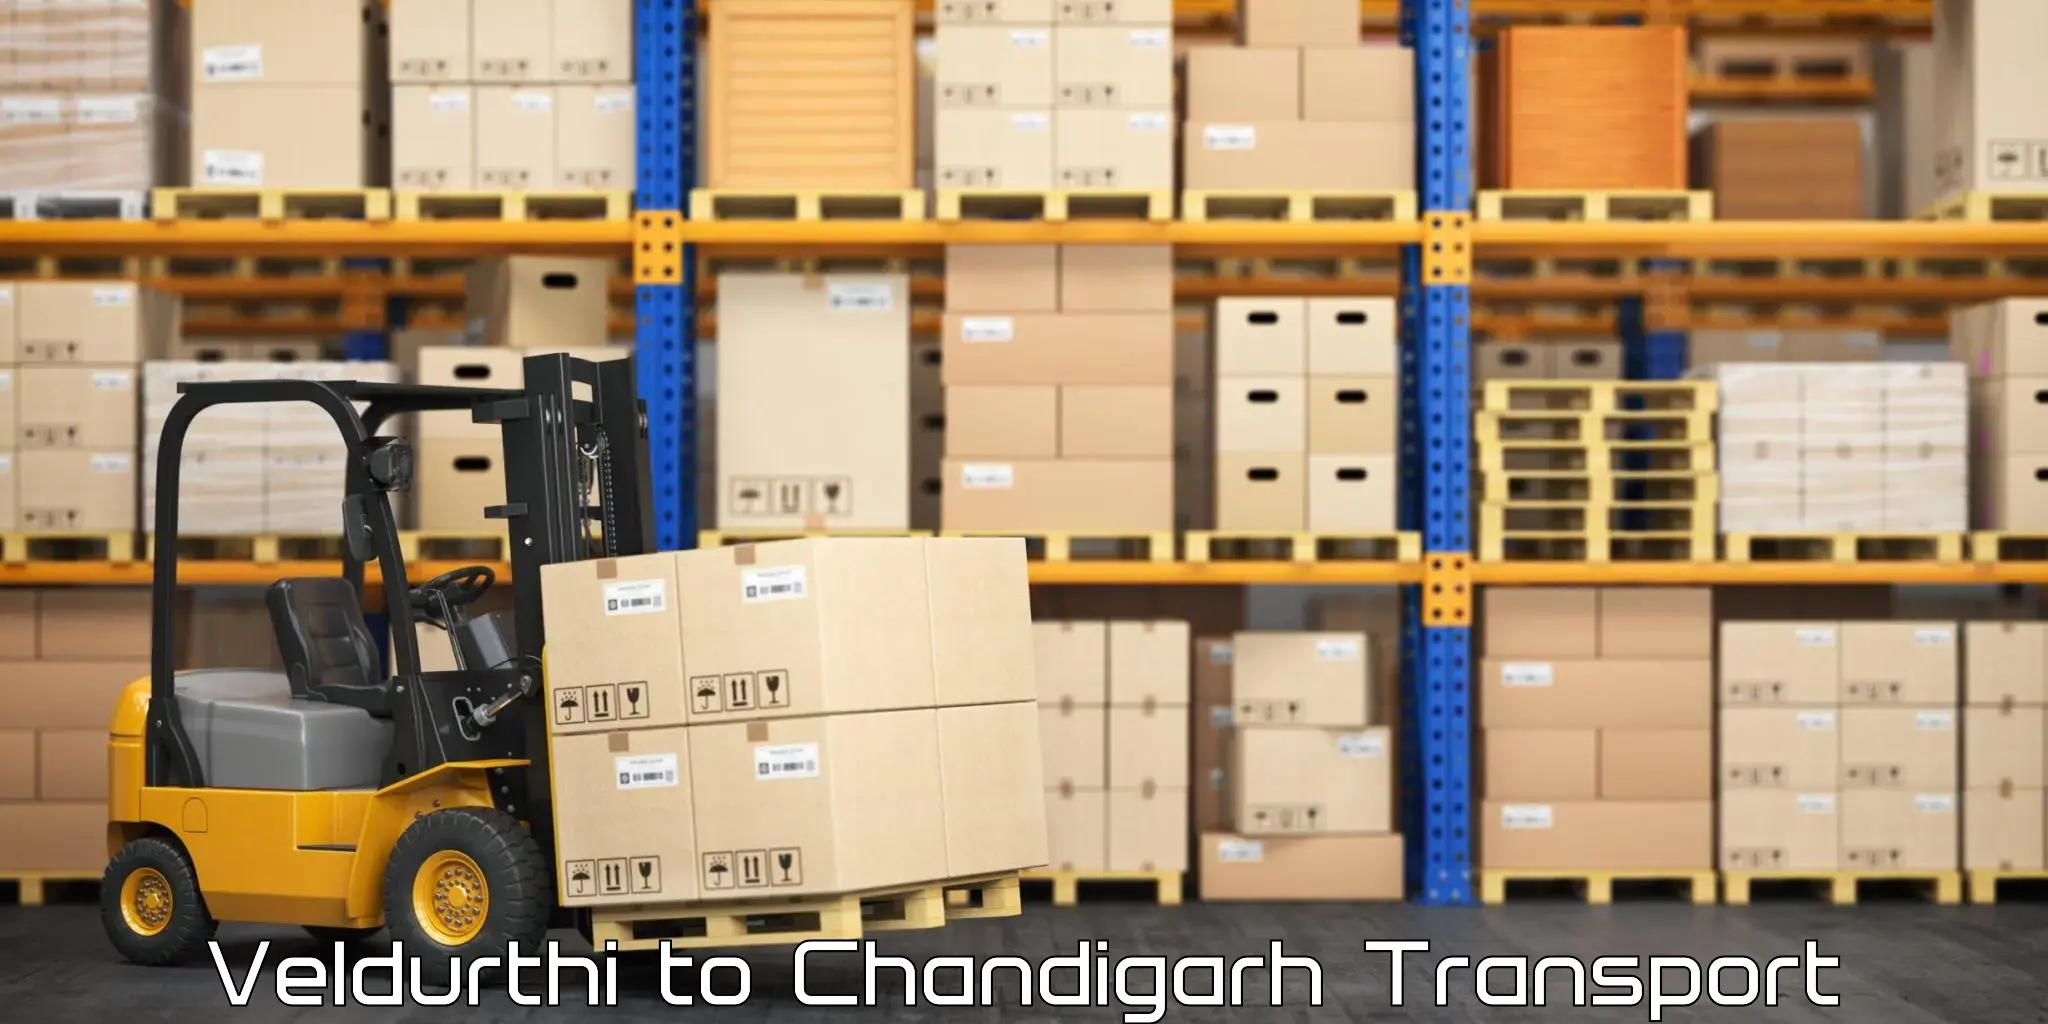 Daily parcel service transport Veldurthi to Chandigarh